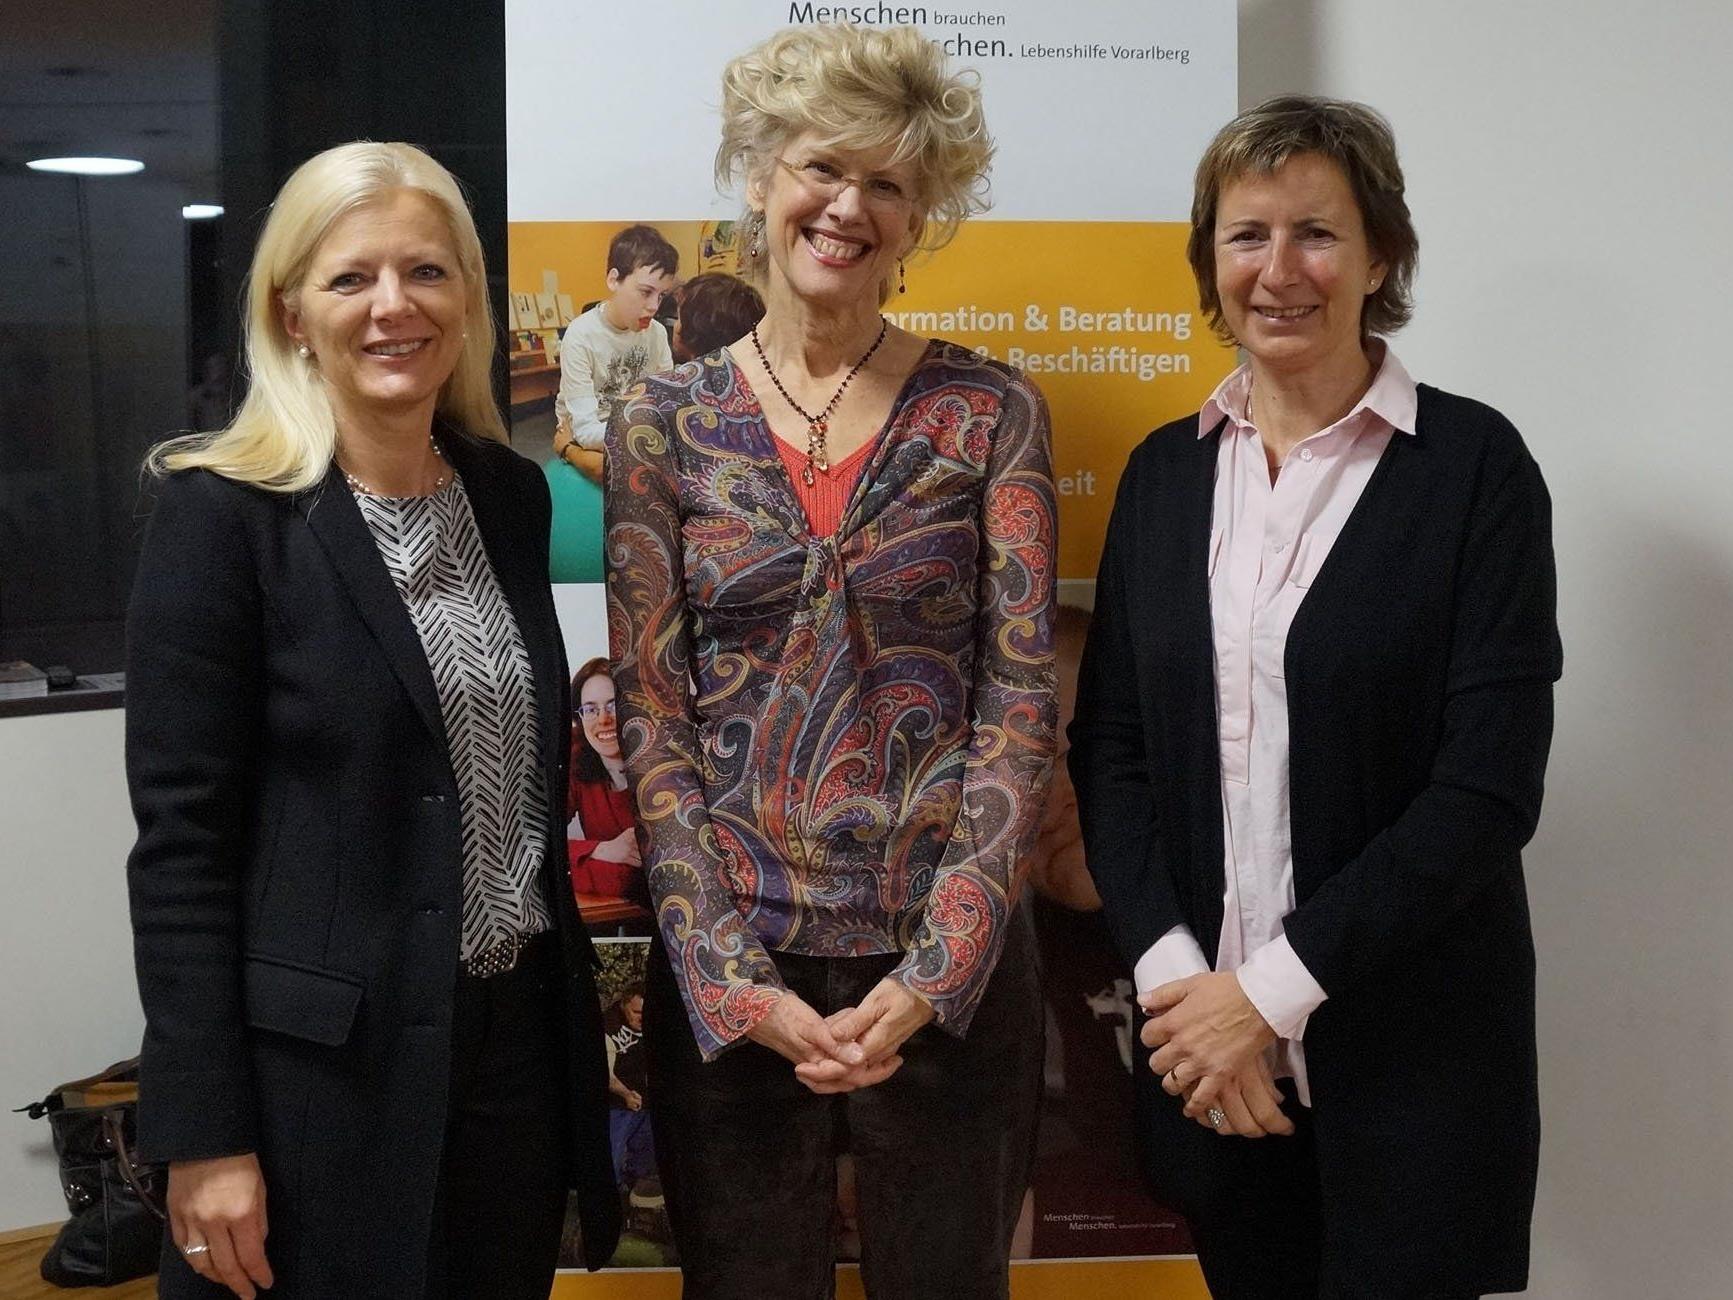 Beth Mount beim Lebenshilfe Trialog 2015 zusammen mit Michaela Wagner (Geschäftsführerin Lebenshilfe Vbg) und Gabriele Nussbaumer (Präsidentin Lebenshilfe Vbg).